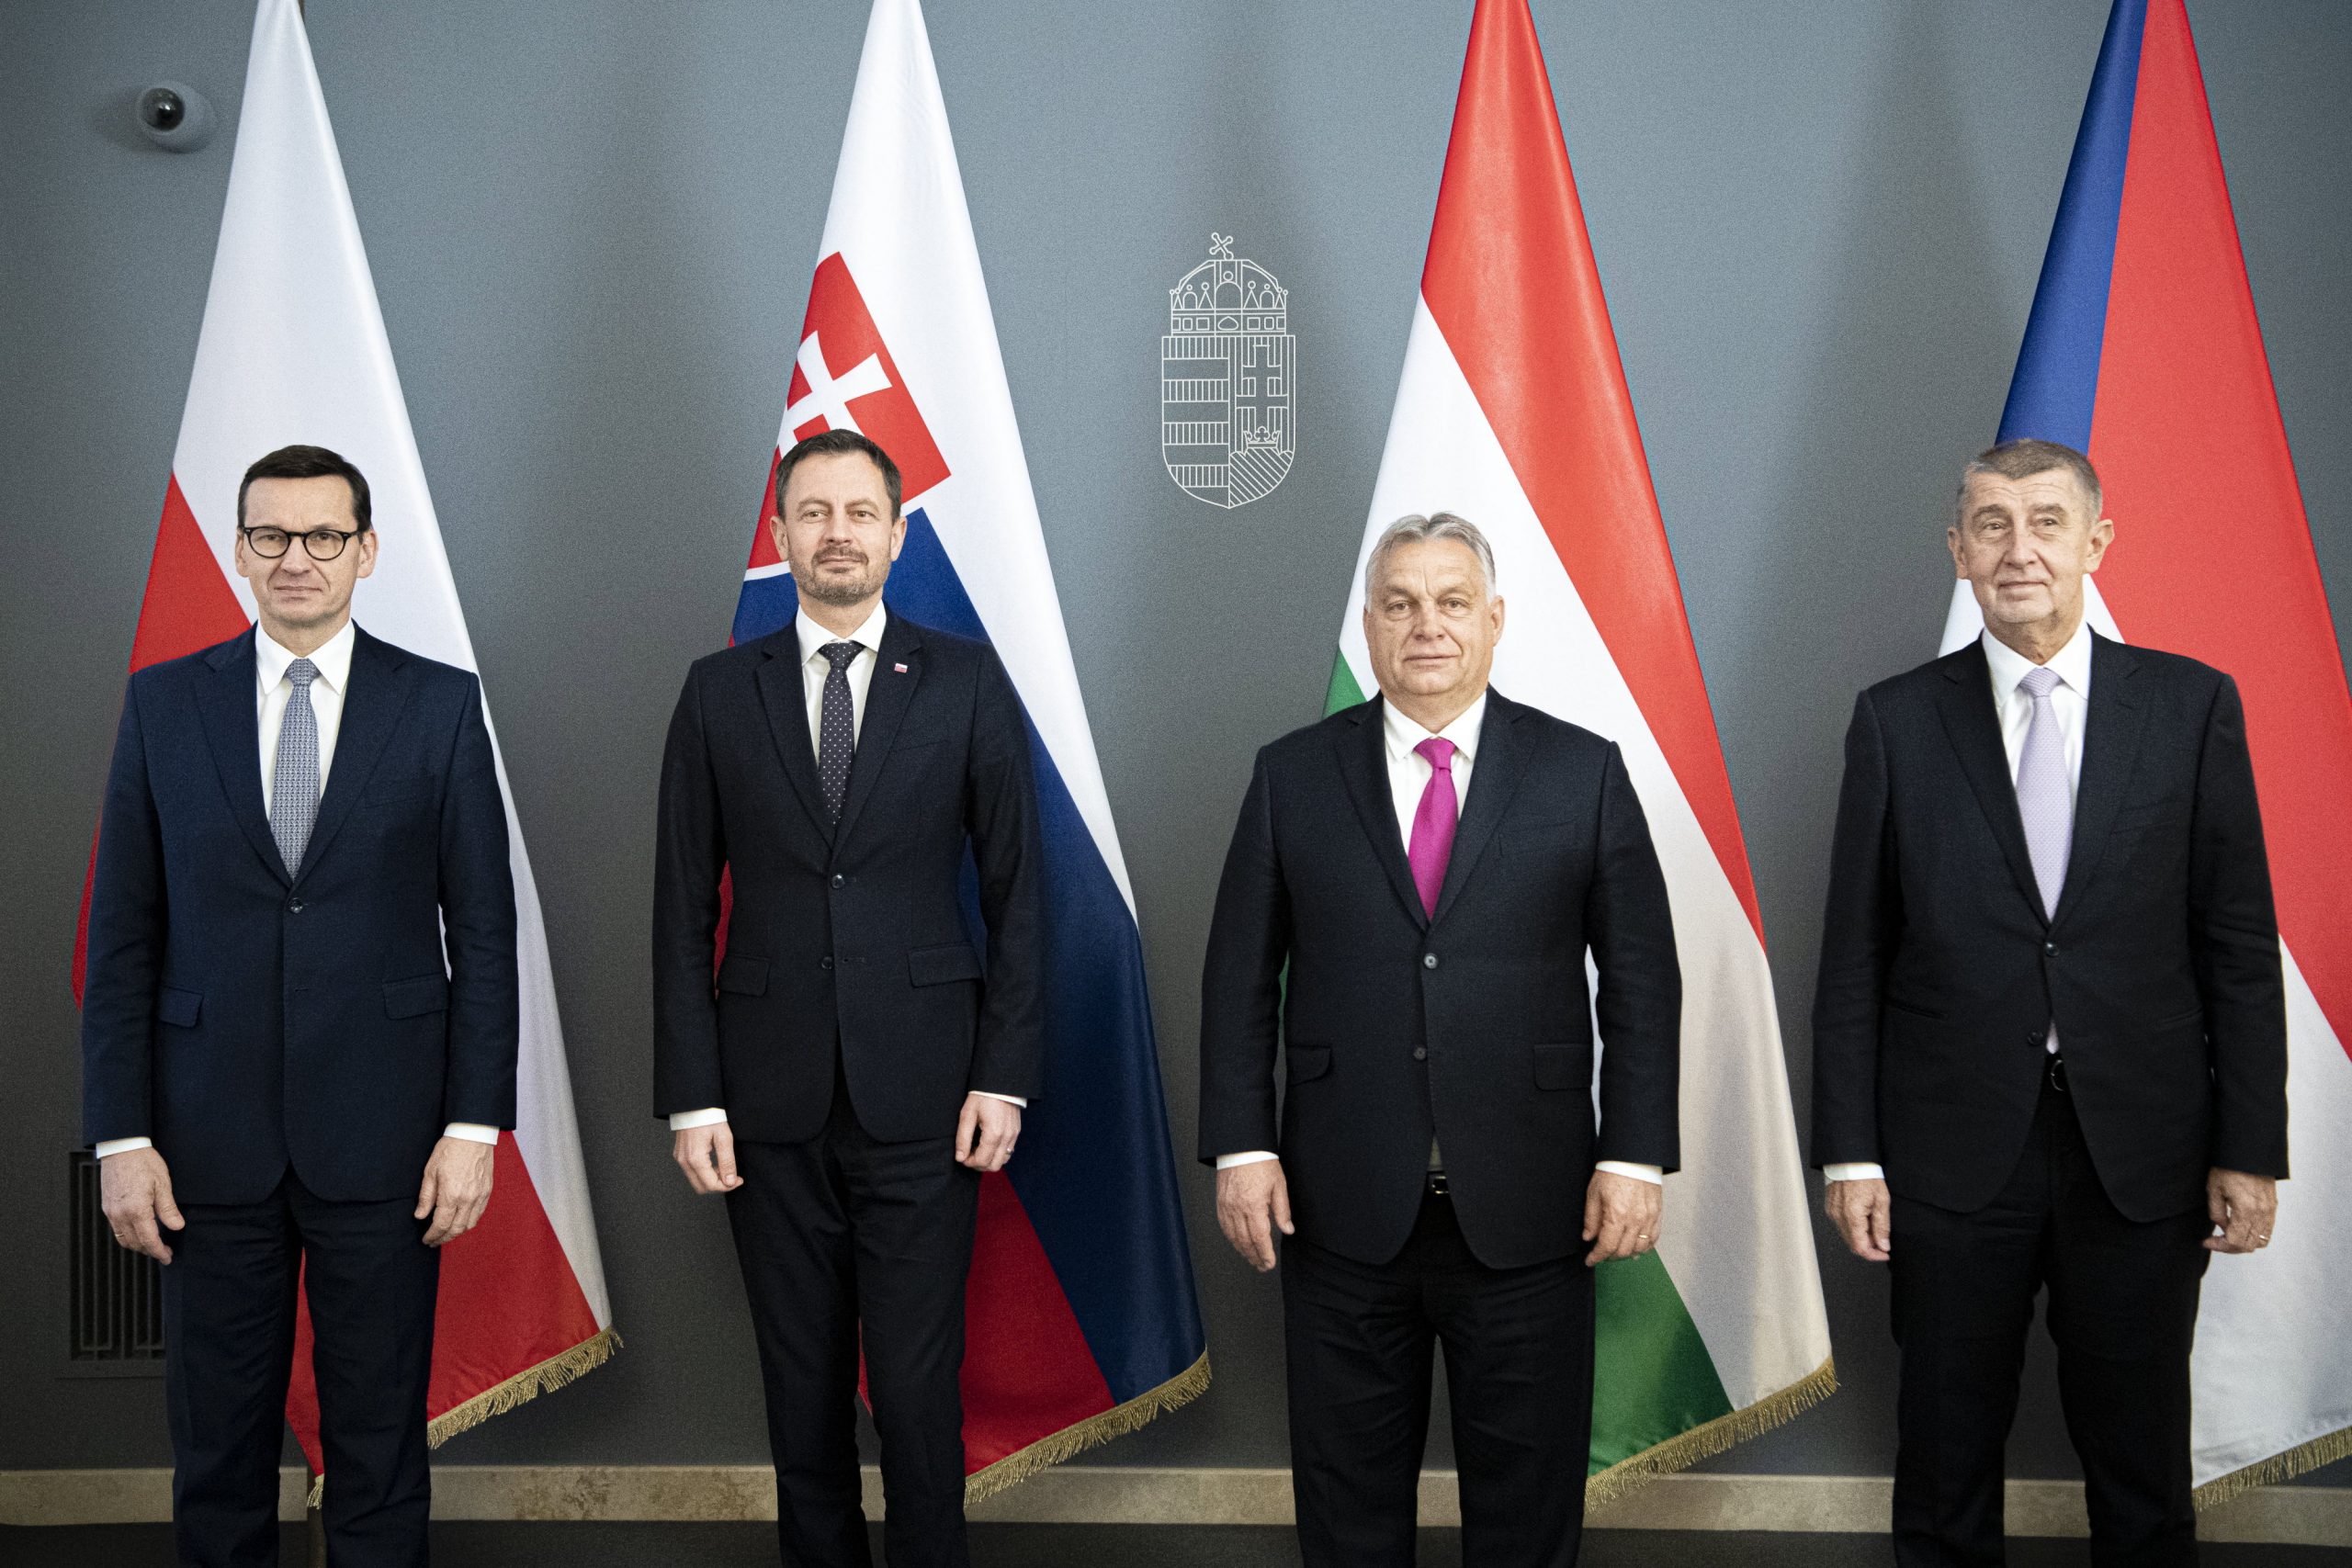 Budapost: Perspektiven für die Visegrád-Partnerschaft